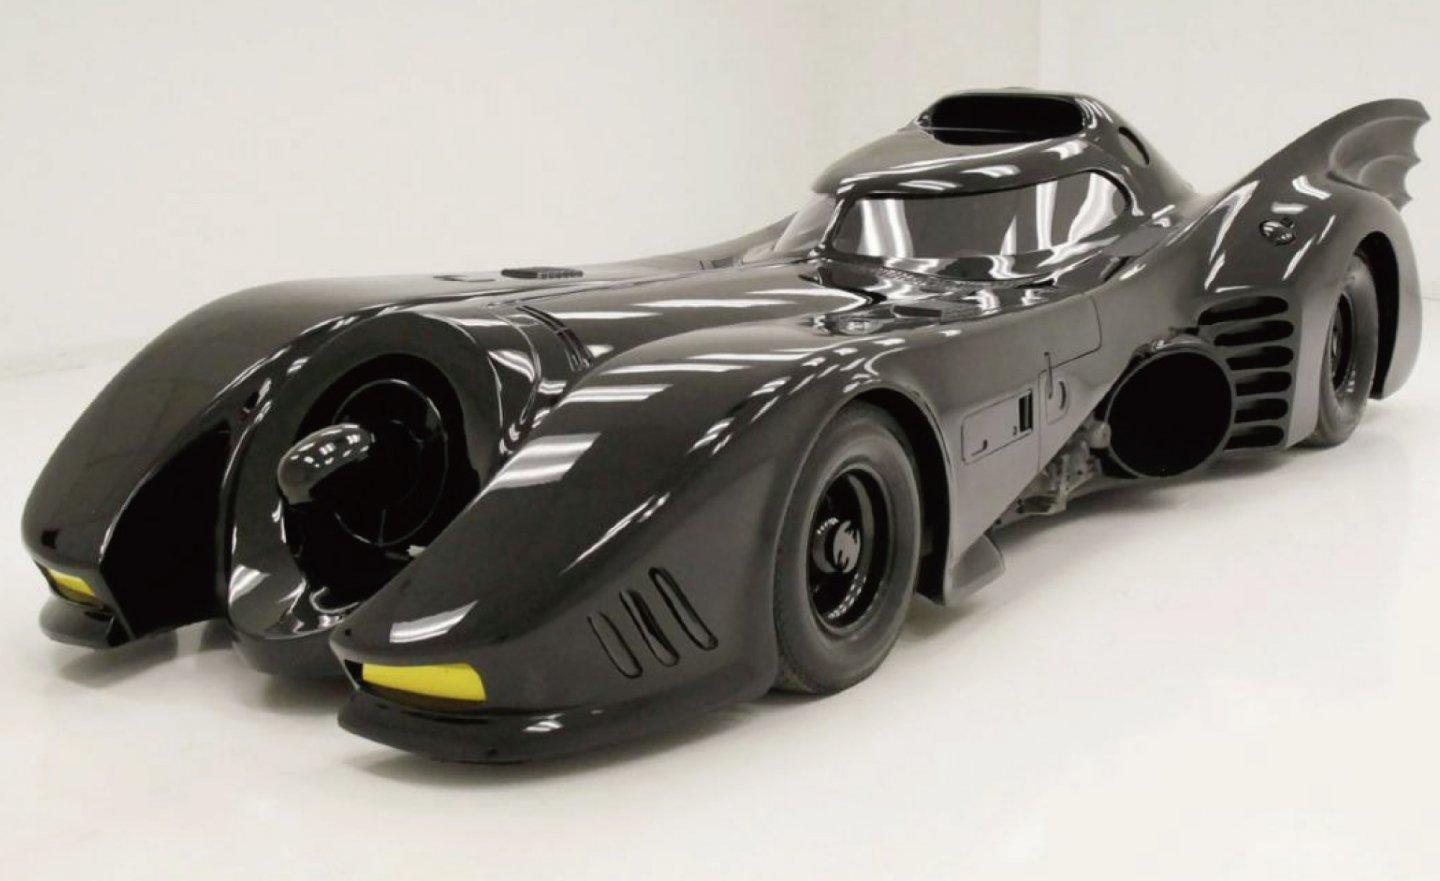 1989 年大導演提姆波頓執導的《蝙蝠俠》蝙蝠車正在出售中，售價超過新台幣 4,641 萬元